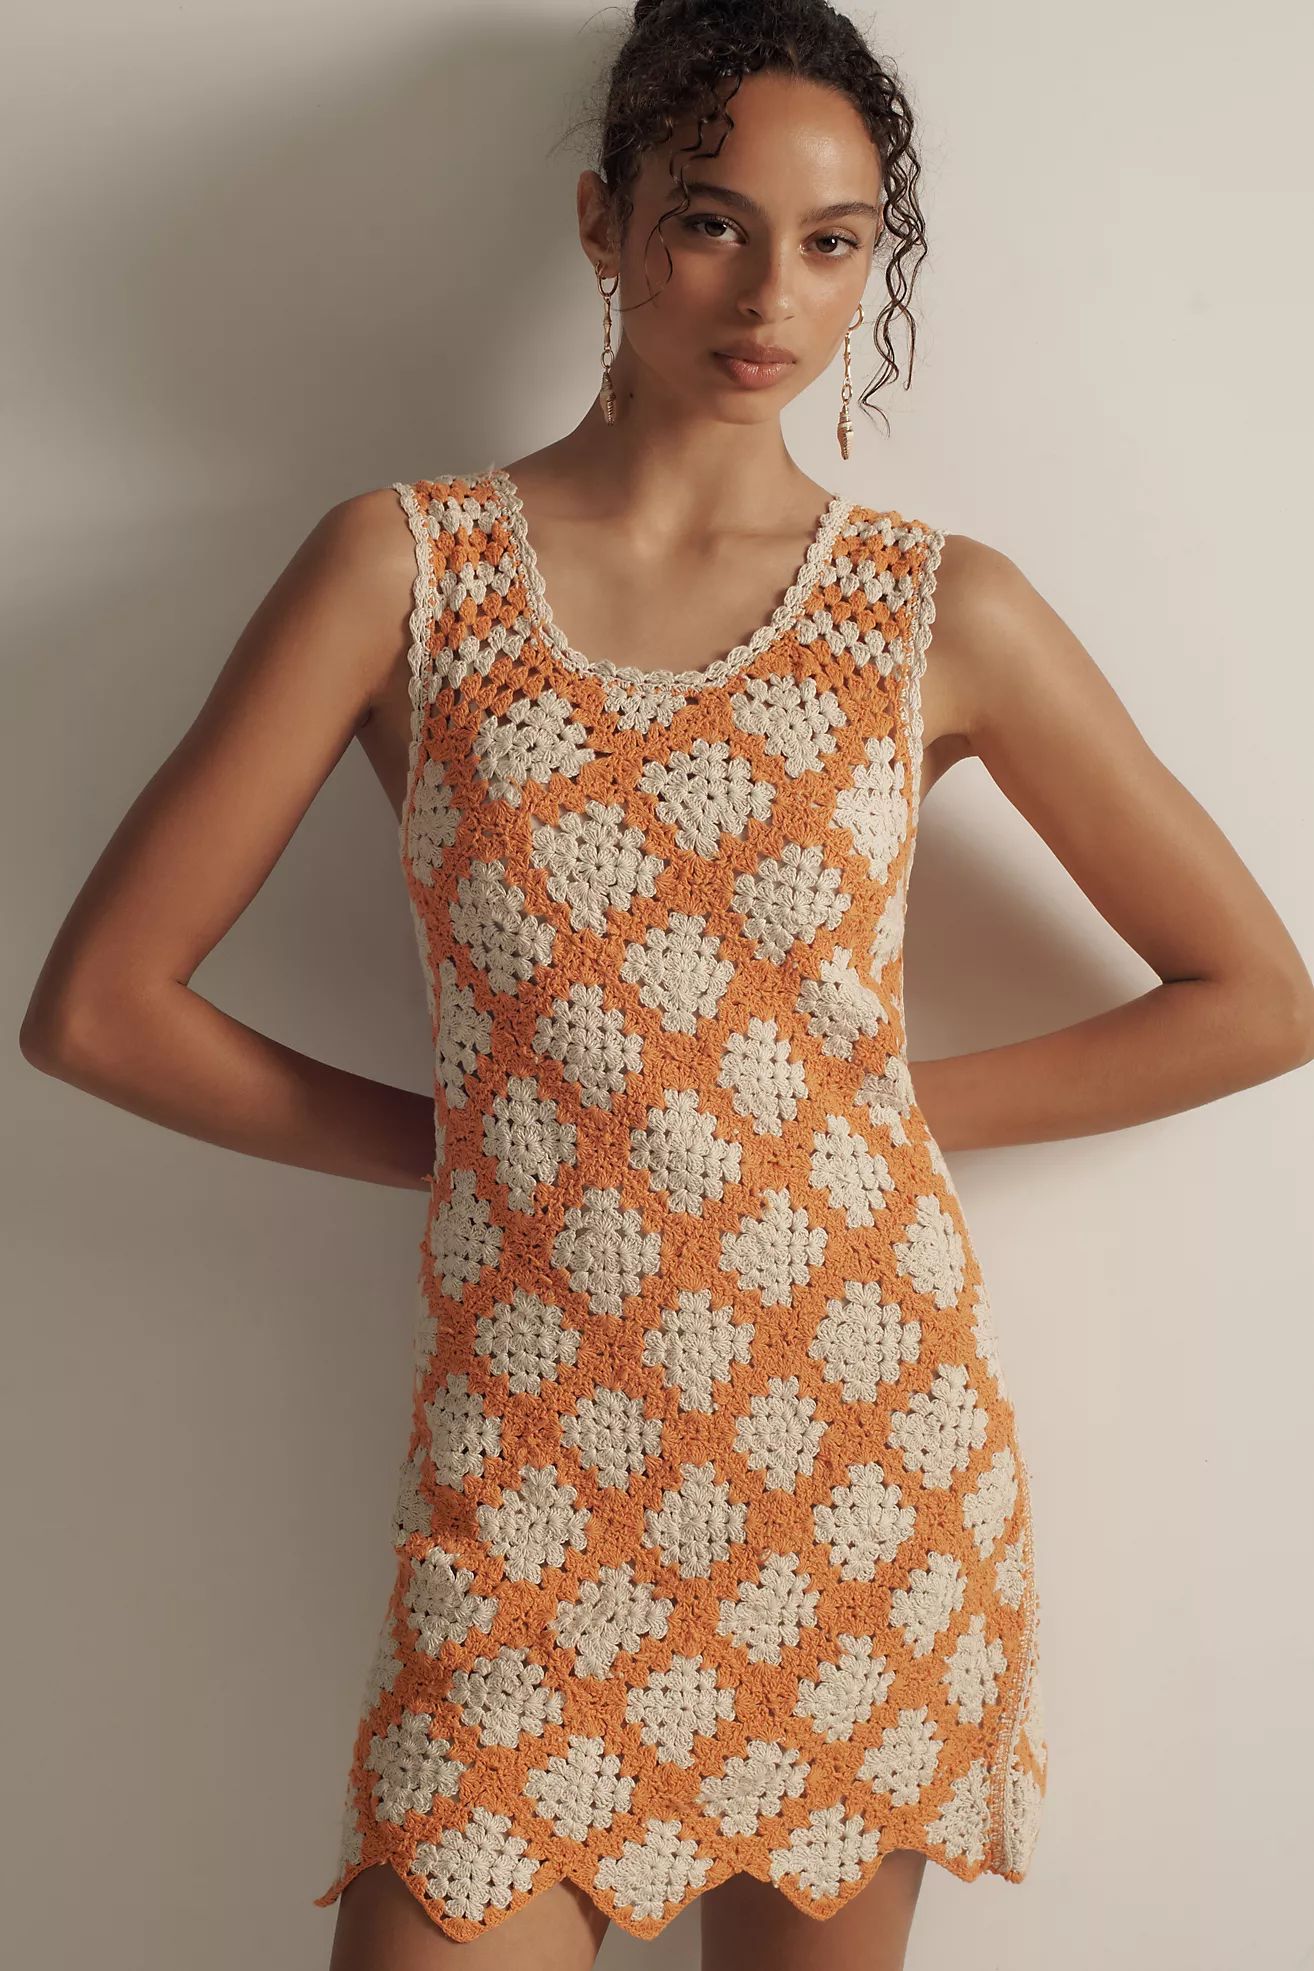 Maeve Sleeveless Crochet Mini Dress | Anthropologie (US)